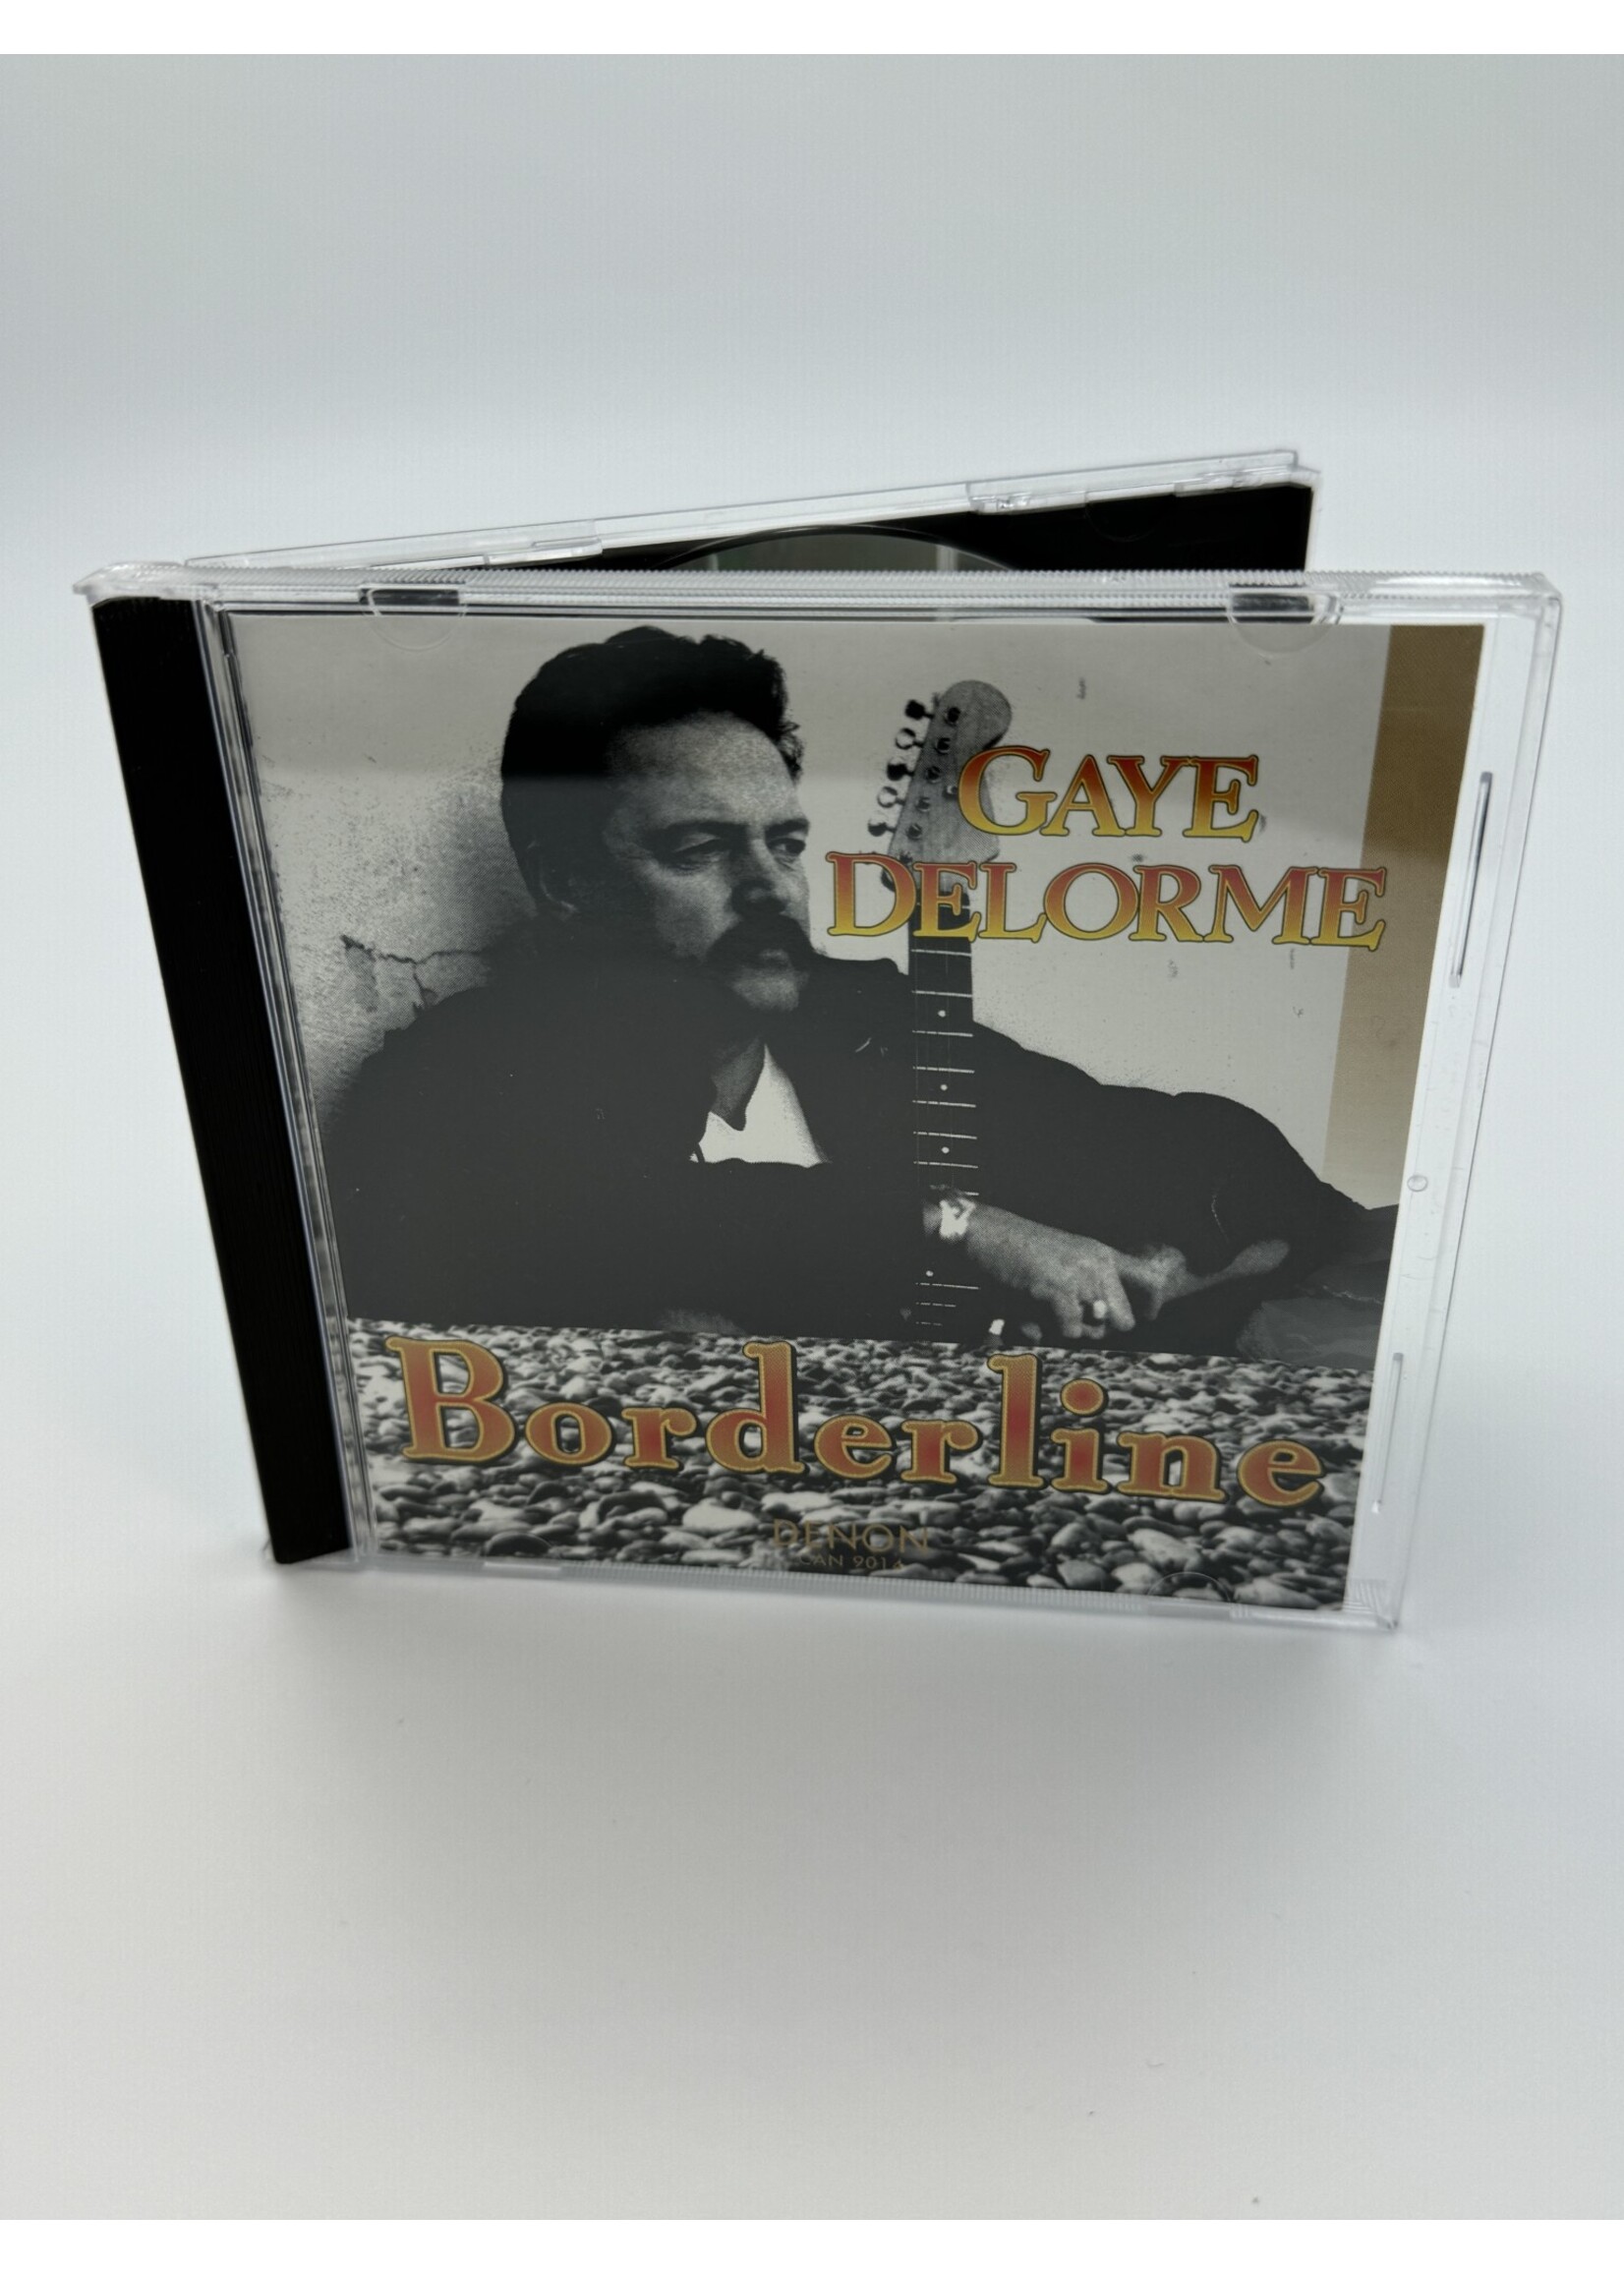 CD Gaye Delorme Borderline CD